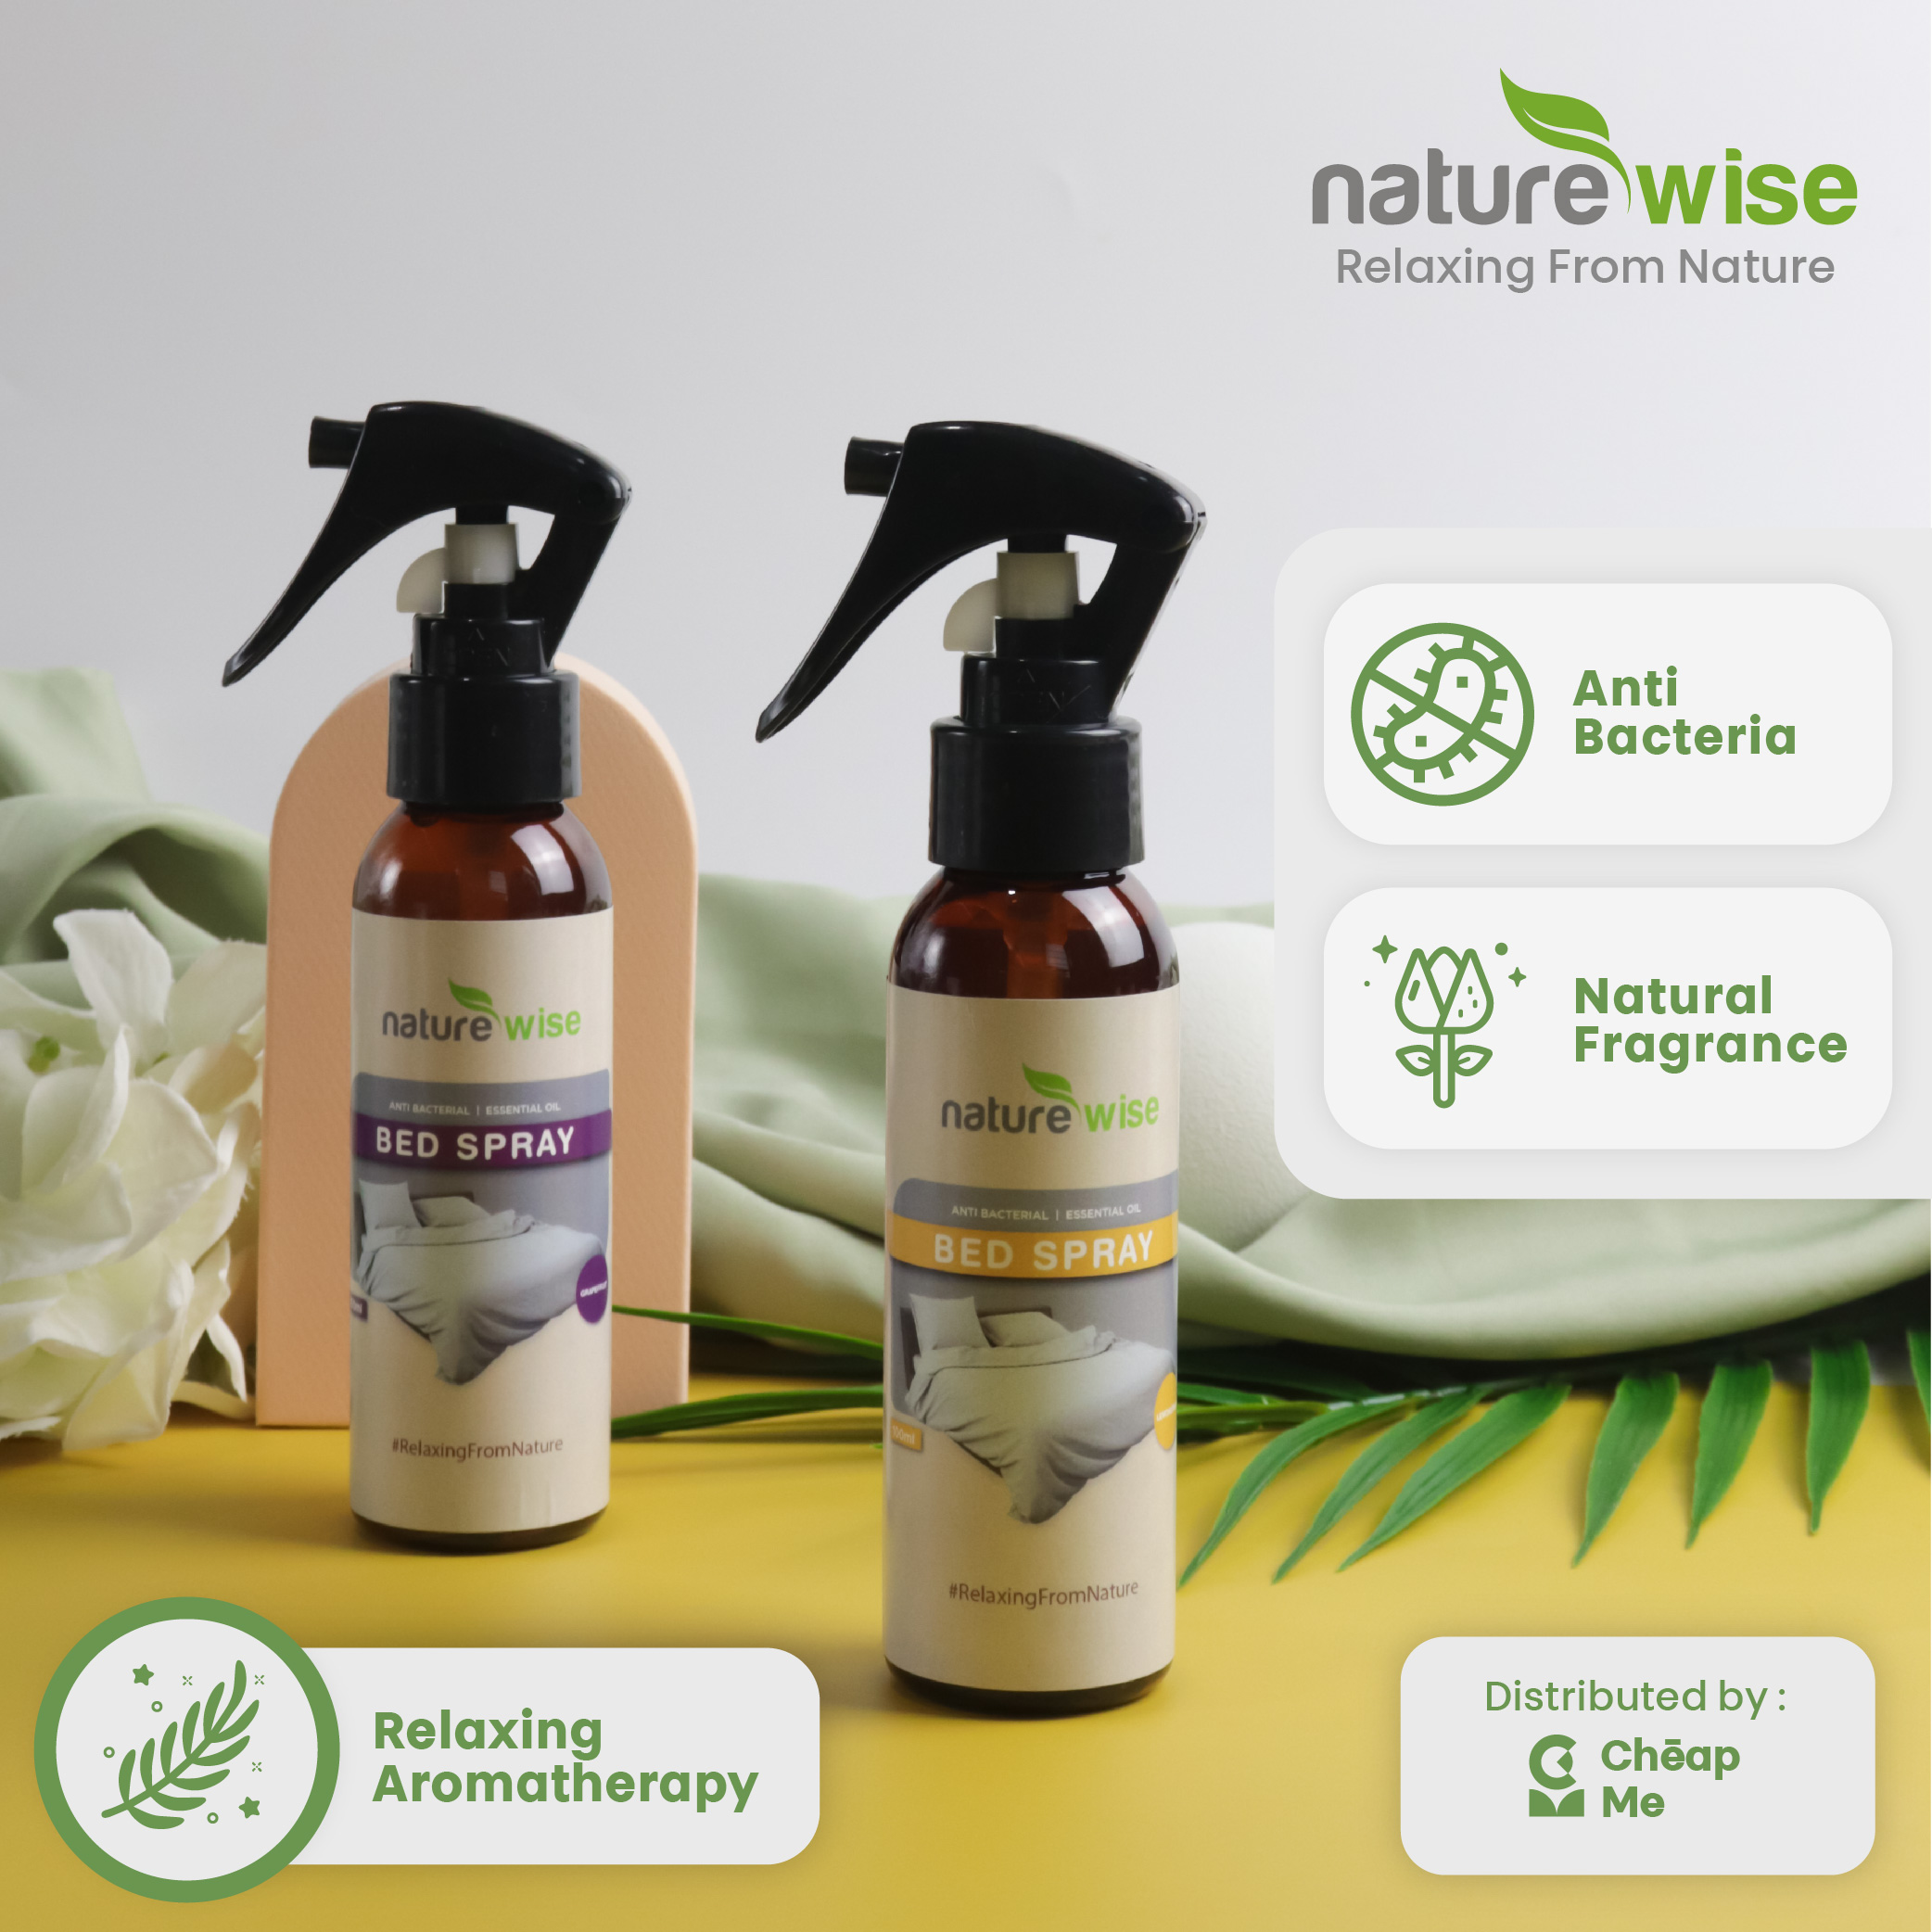 NatureWise Bed Spray Semprotan Anti Tungau Kasur Sofa jok 100ml / Semprotan Spray Bantal Ranjang Anti Bakteri Tungau Essential Aromatheraphy